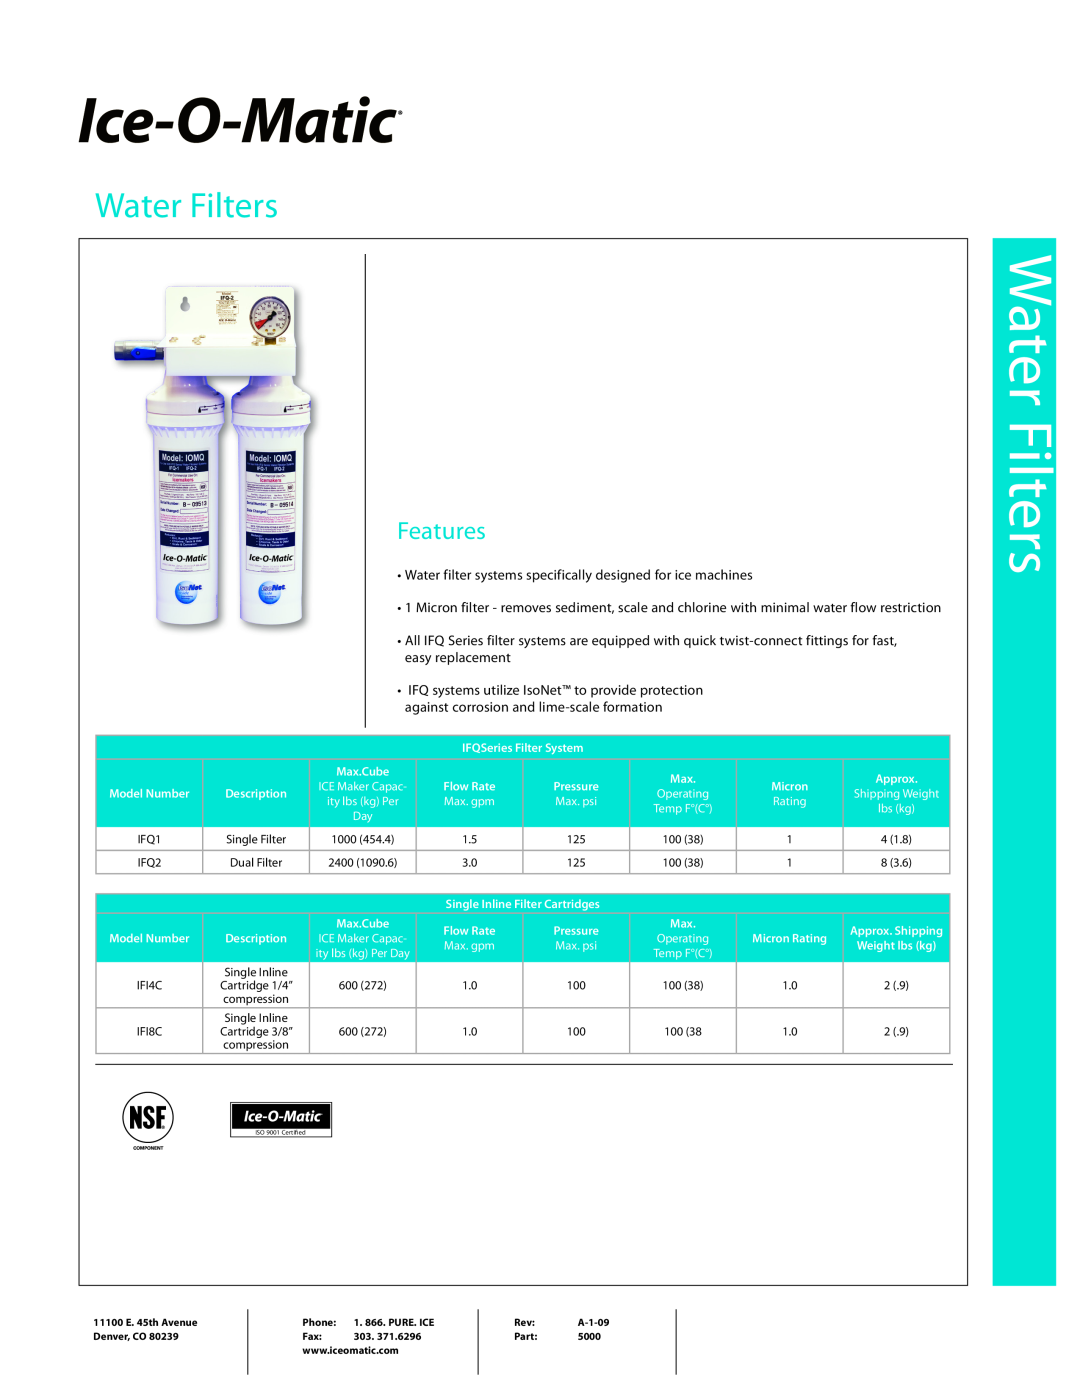 Ice-O-Matic IFI8C, IFQ2, IFQ1, IFI4C manual Water Filters, Features 